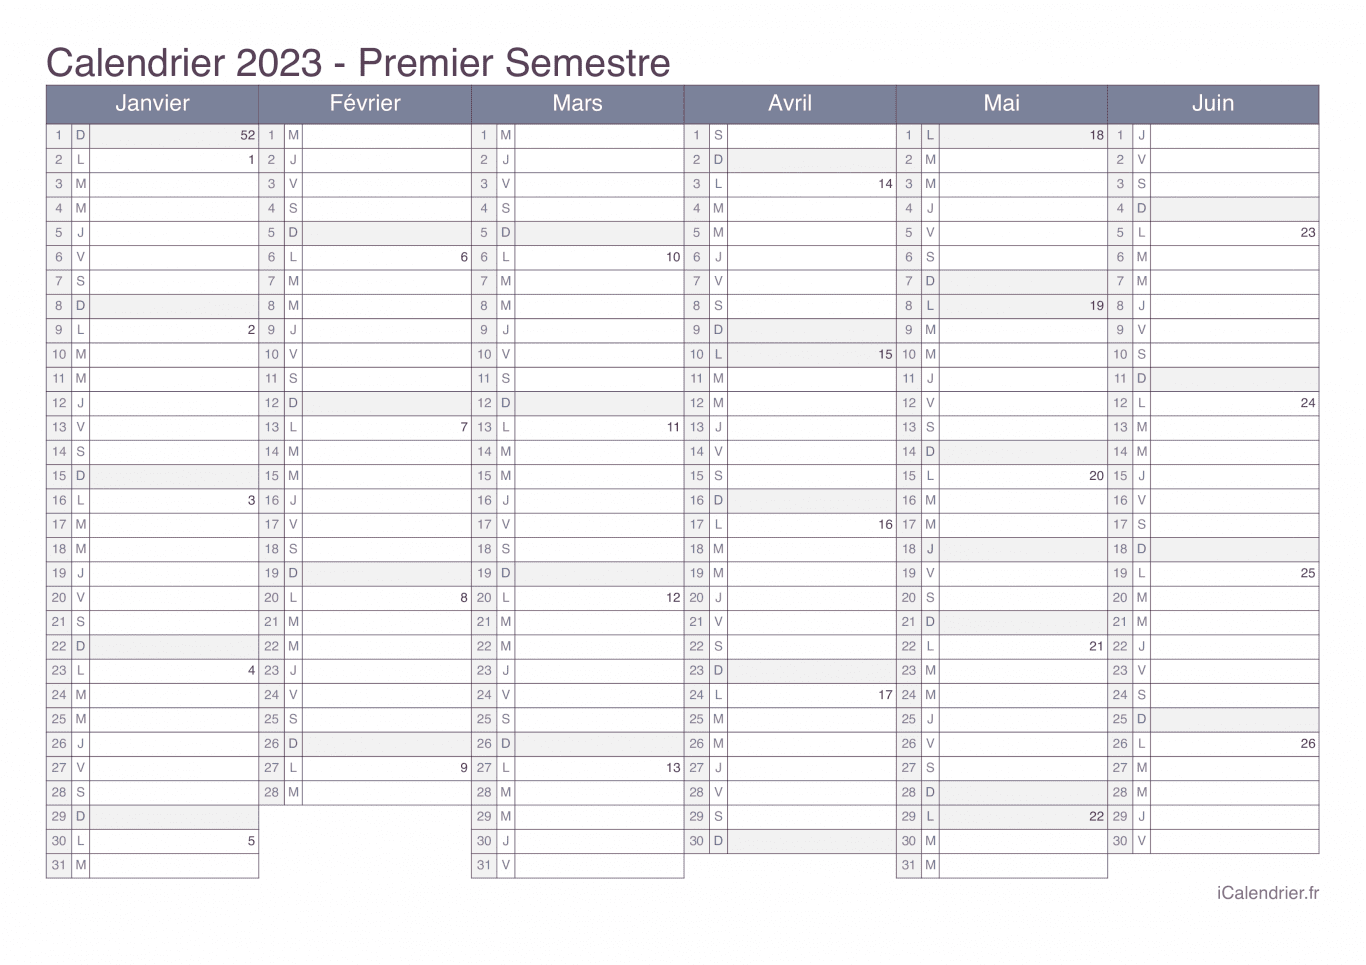 Calendrier par semestre avec numéros des semaines 2023 - Office